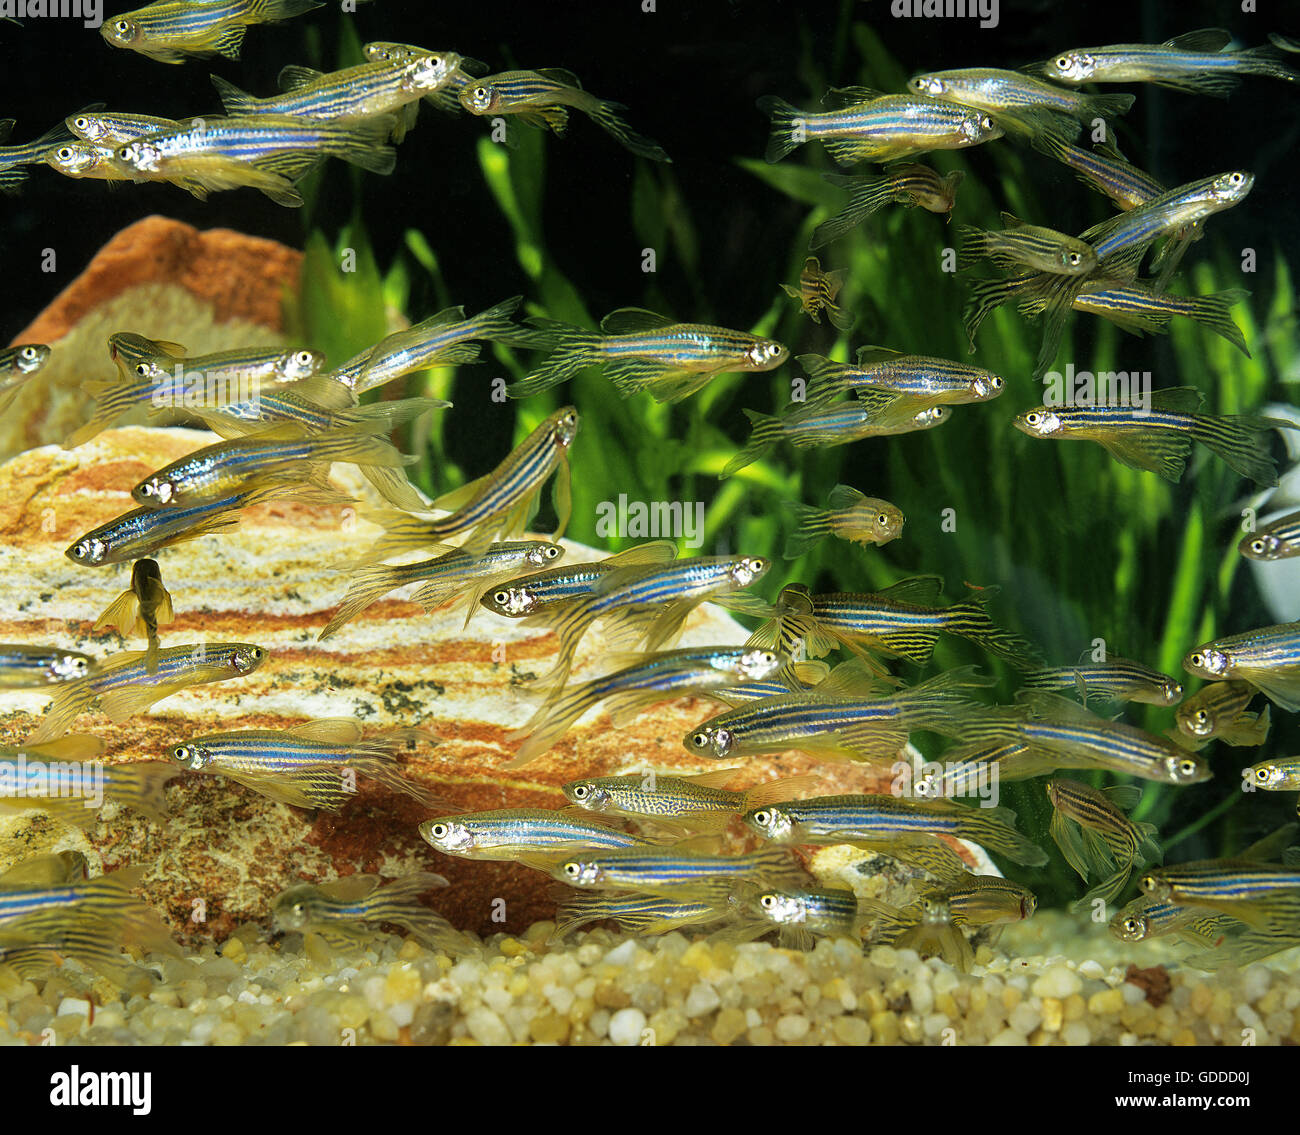 Long-Finned Zebra Fish, brachydanio rerio, Aquarium Fishes Stock Photo